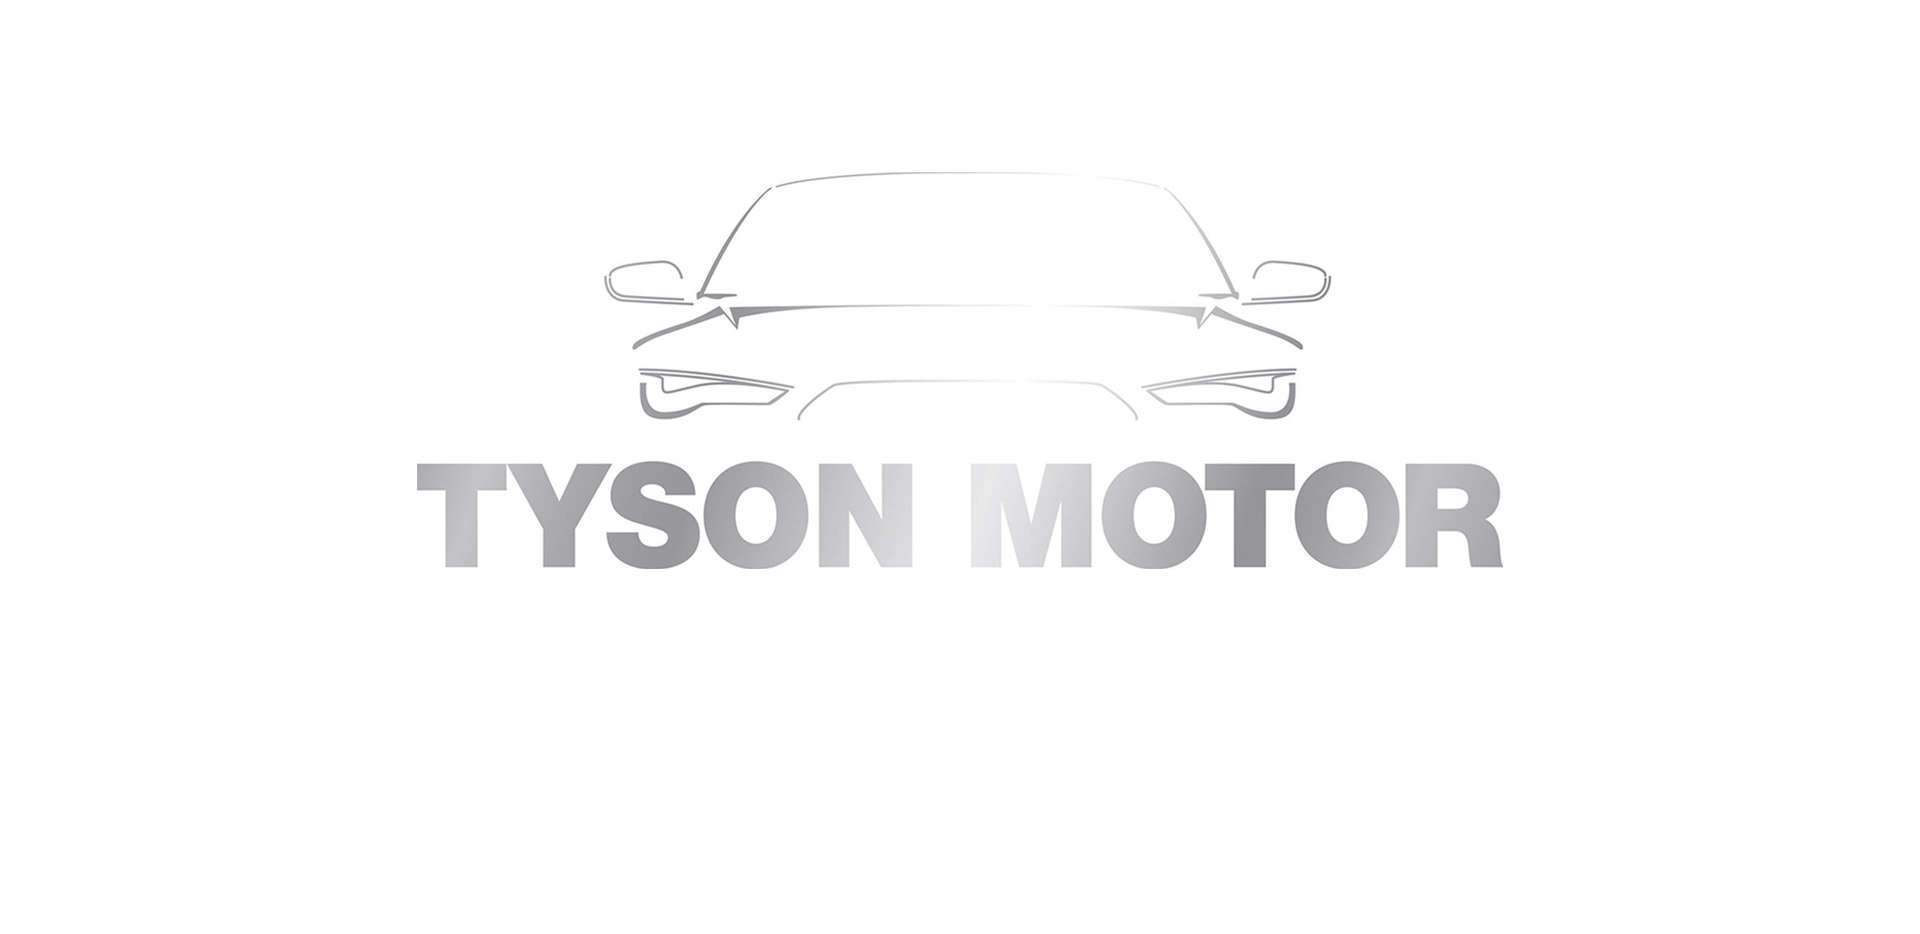 Tyson Motor